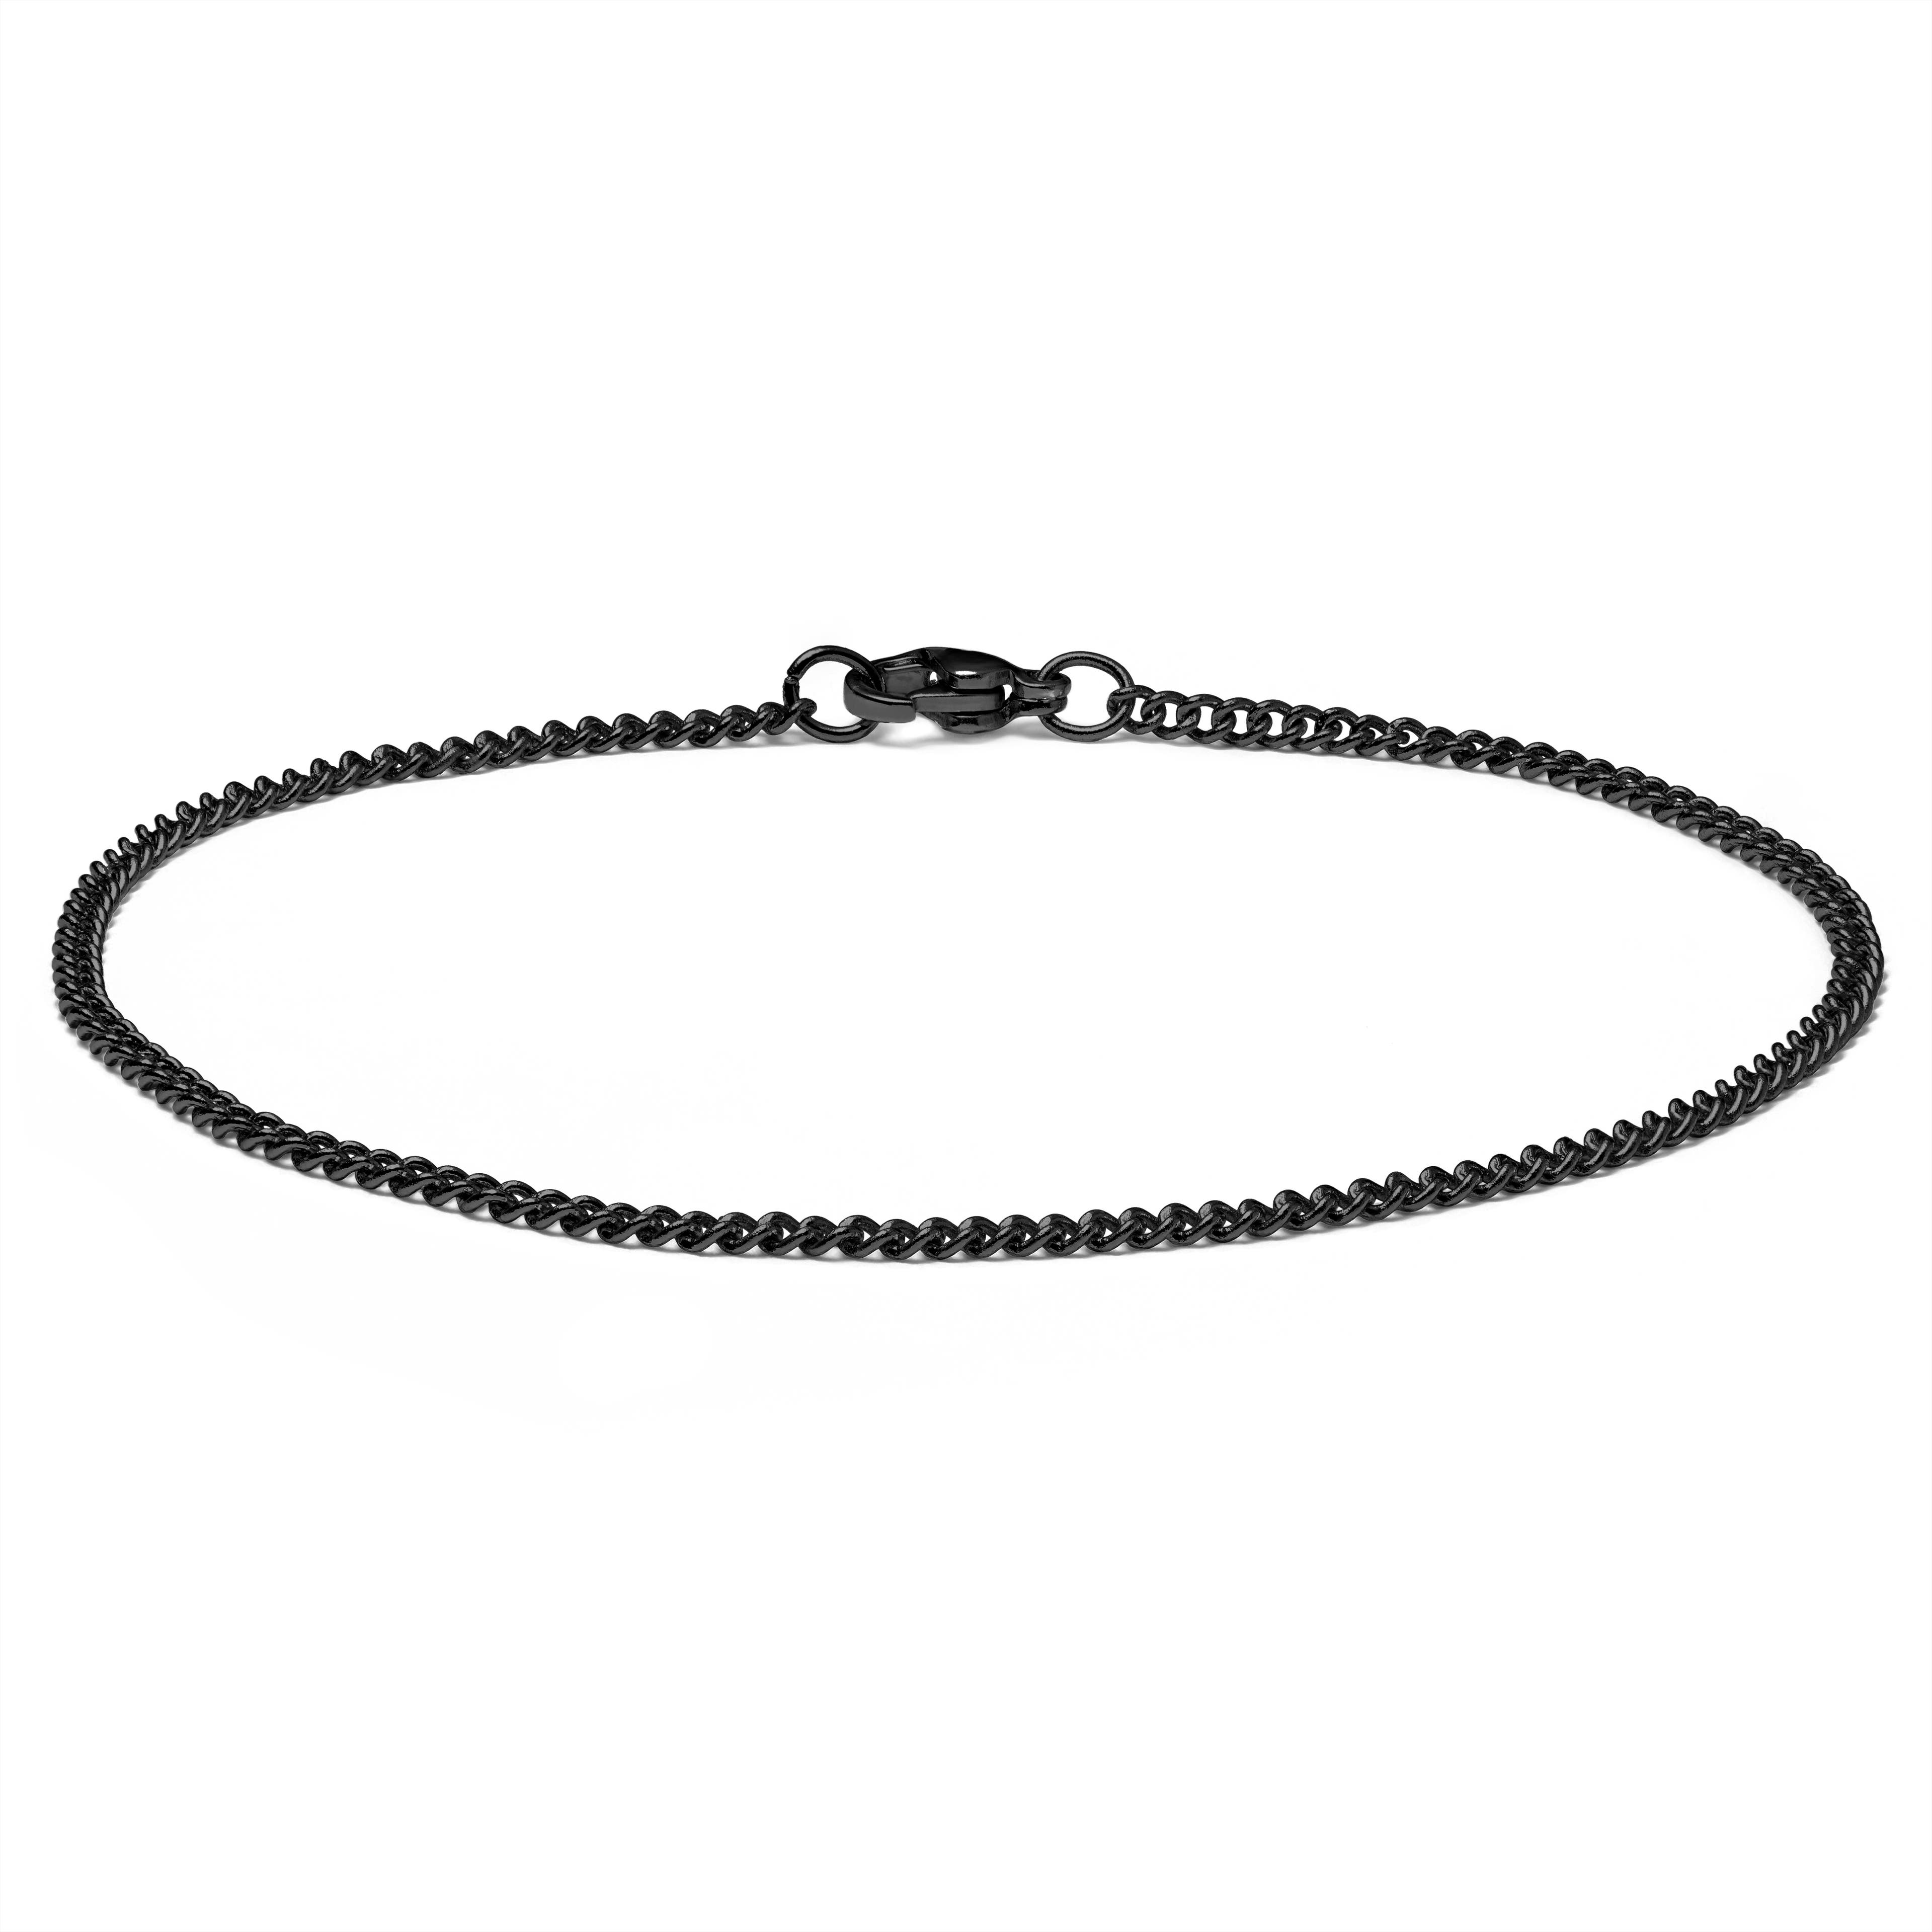 Bracelet chaîne à mailles noires - 2 mm